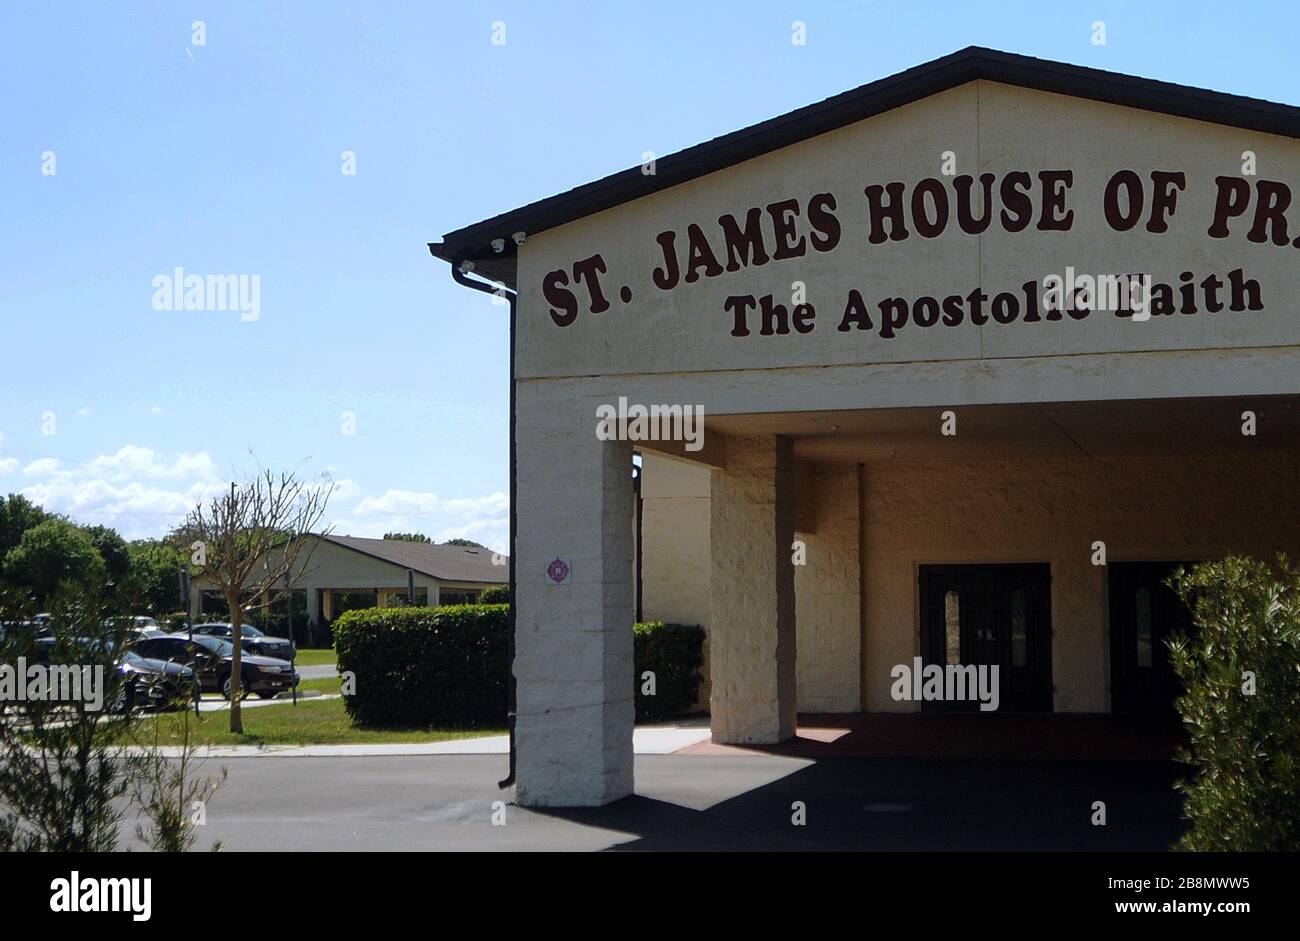 22 marzo 2020 - Sanford, Florida, Stati Uniti - la St. James House of Prayer of the Apostolic Faith Church svolge i servizi domenicali in un edificio all'aperto dietro la chiesa il 22 marzo 2020 a Sanford, Florida, nel tentativo di frenare la diffusione del COVID-19. (Paul Hennessy/Alamy) Foto Stock